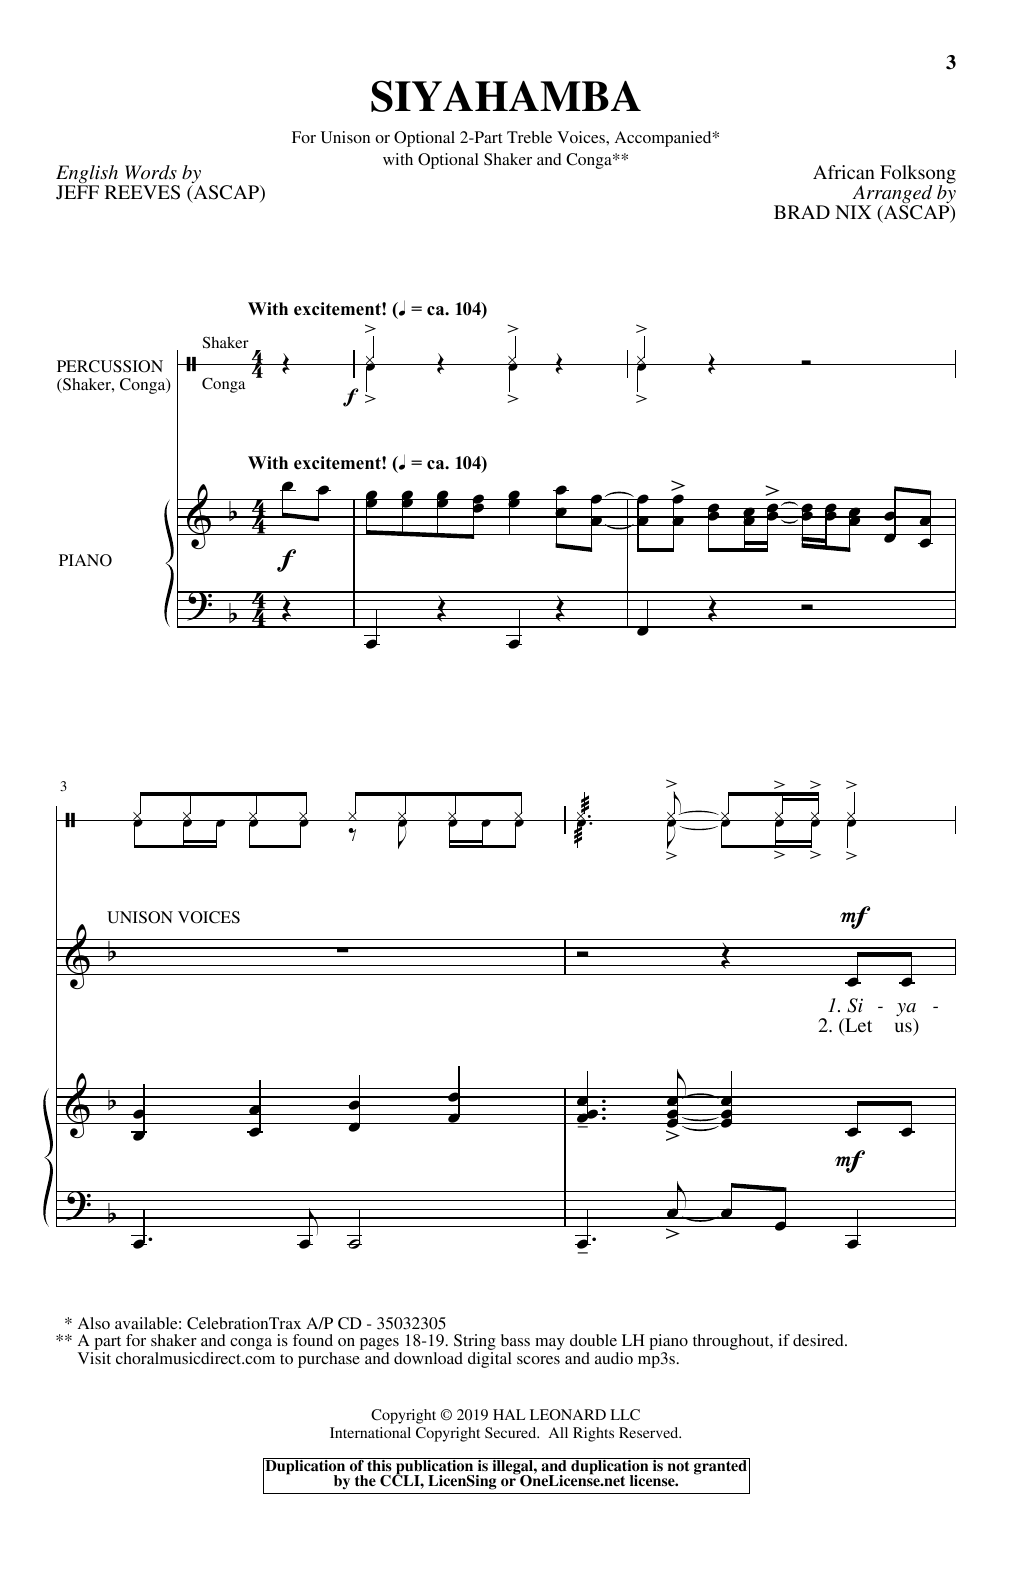 Brad Nix Siyahamba Sheet Music Notes & Chords for Choral - Download or Print PDF